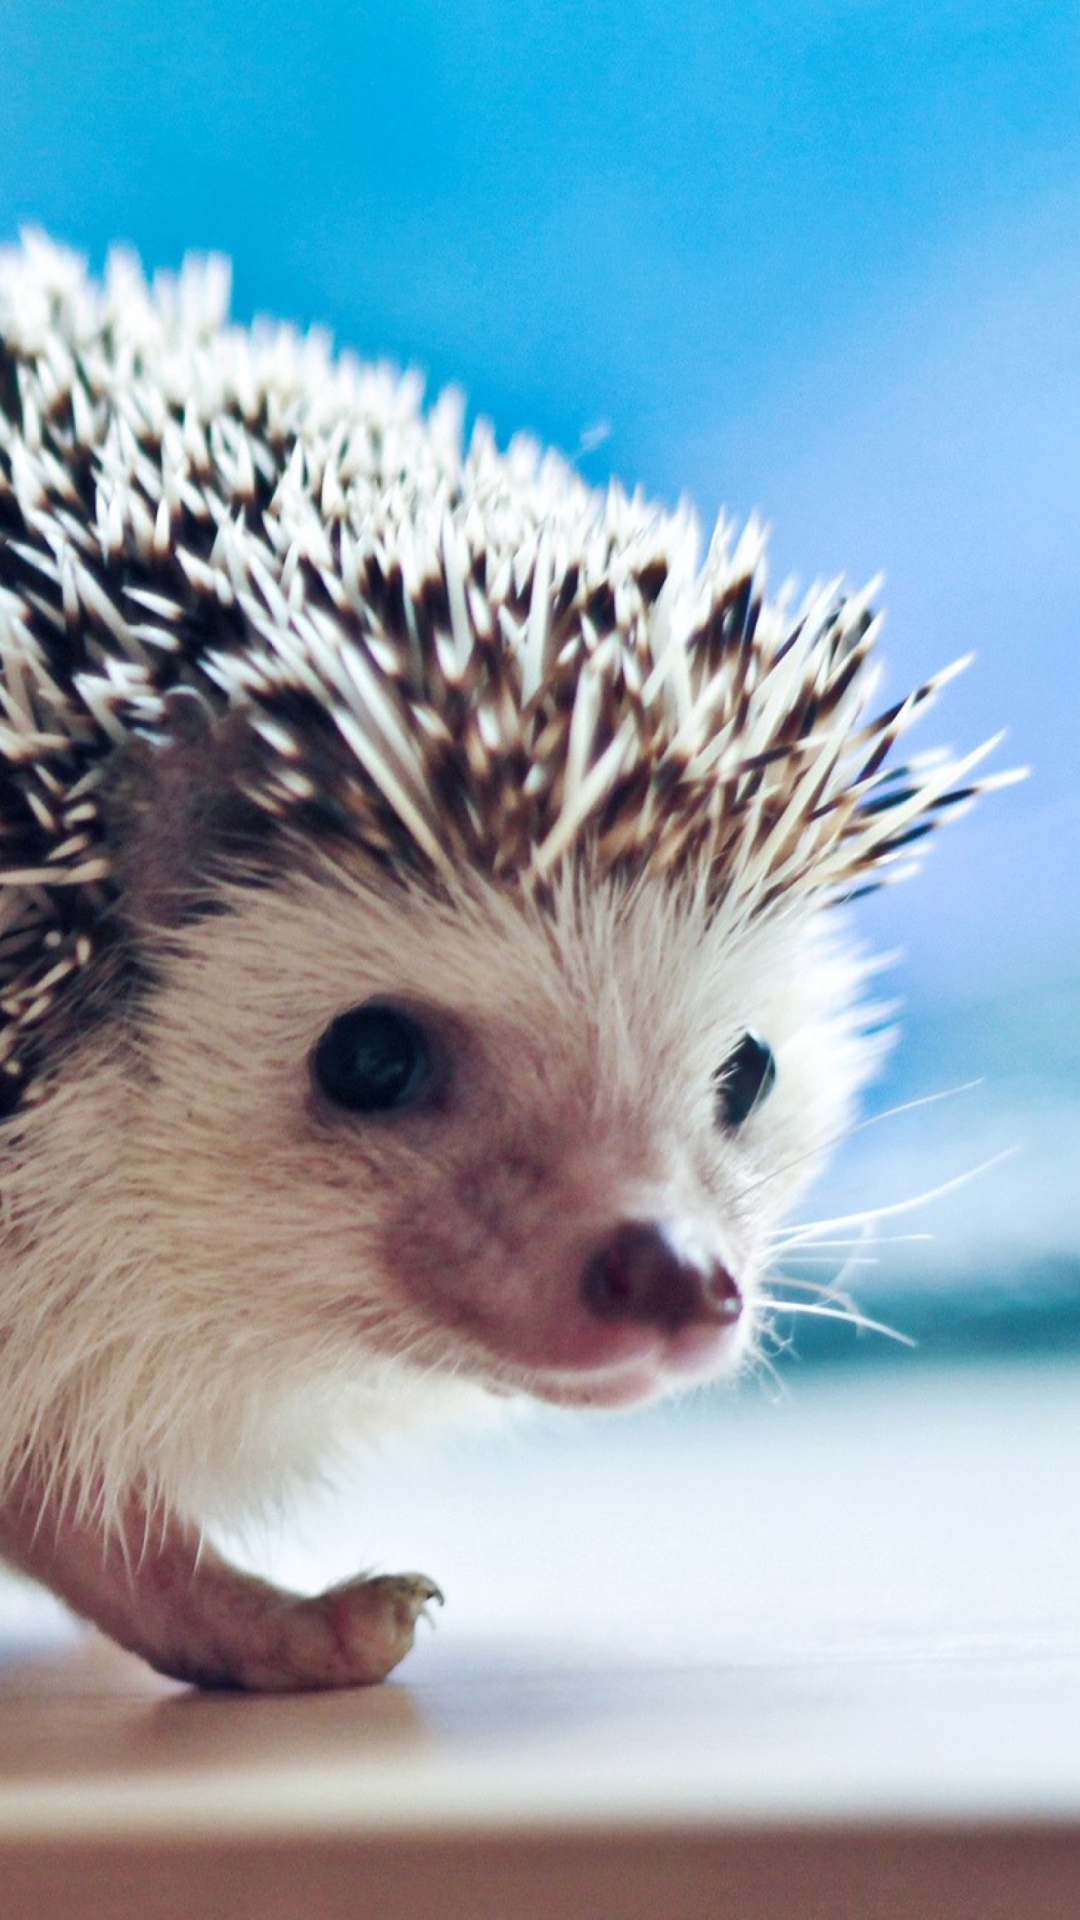 Cute Hedgehog wallpaper 1080x1920